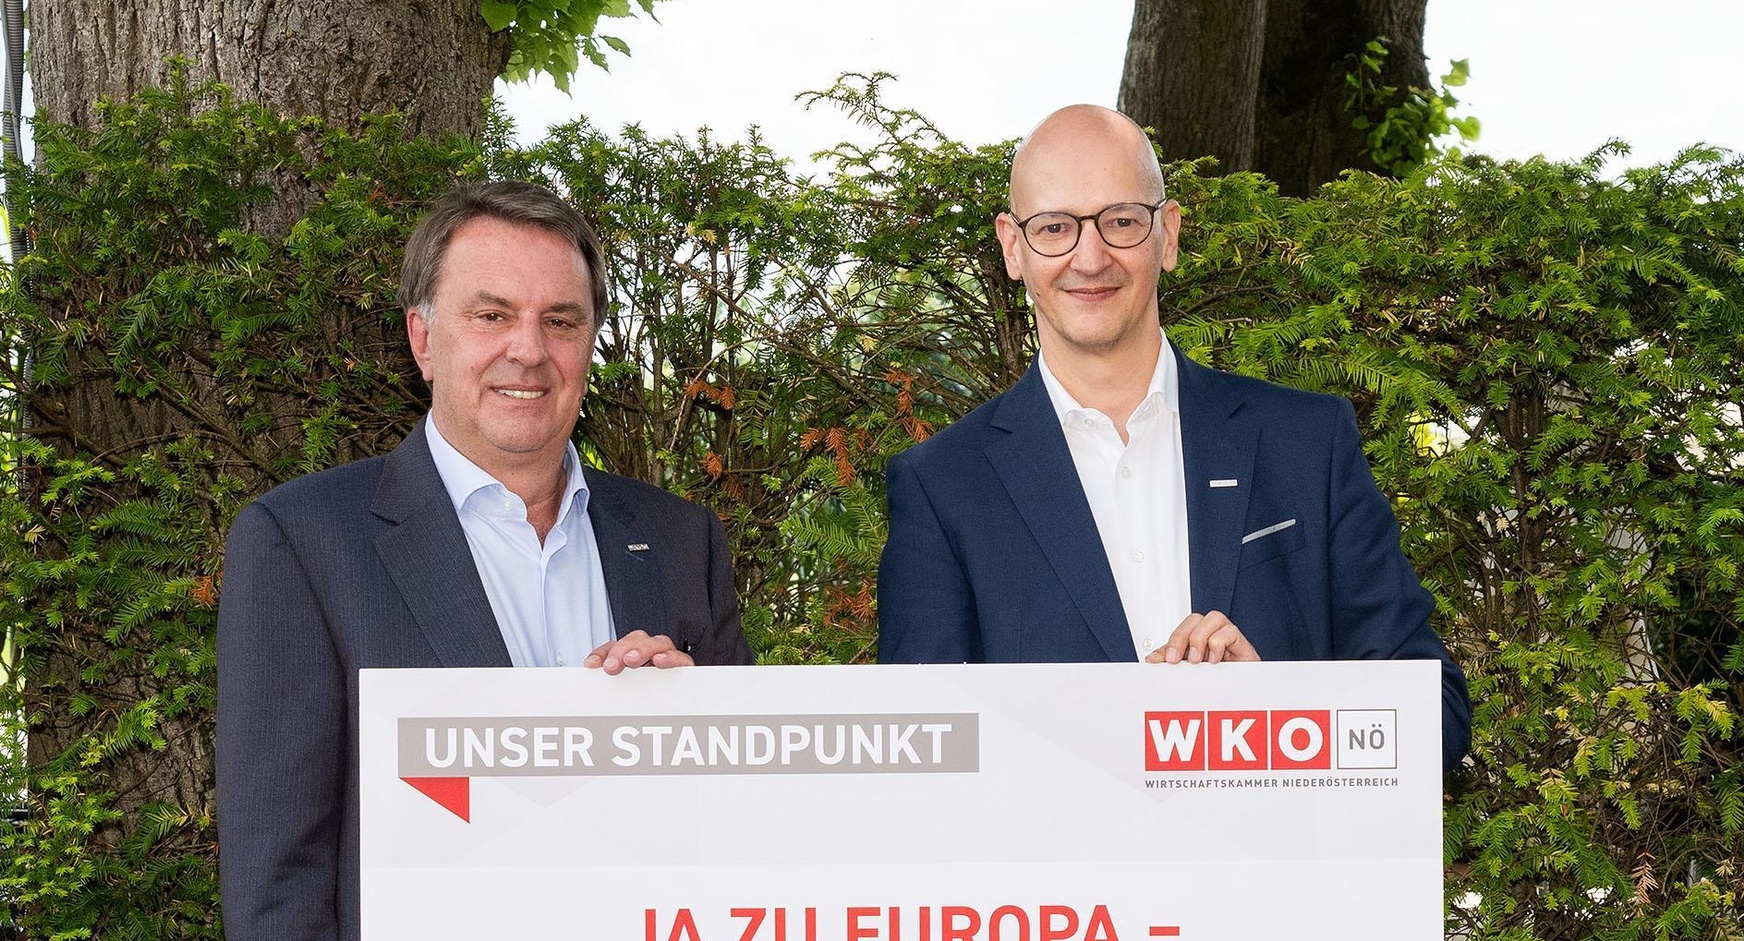 WKNÖ-Präsident Wolfgang Ecker (links) und WKNÖ-Direktor Johannes Schedlbauer